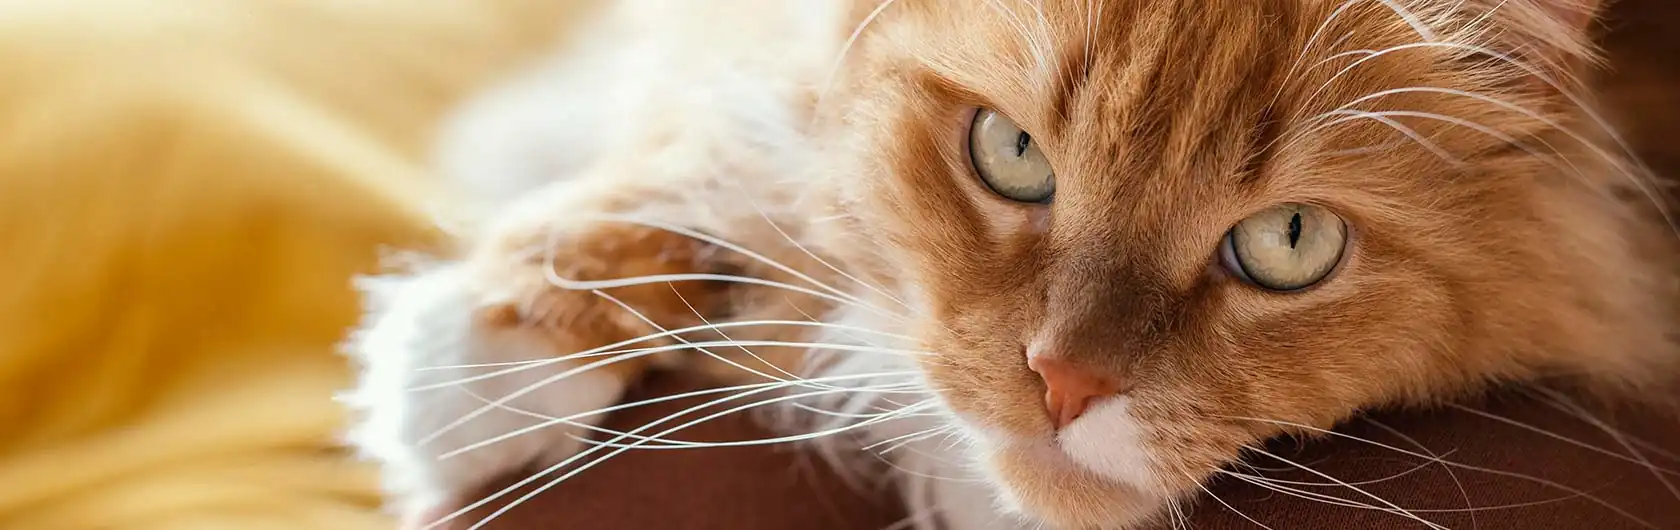 Control de Peso y Ejercicio Diario en Gatos Adultos y comida para gatos de calidad nutribon